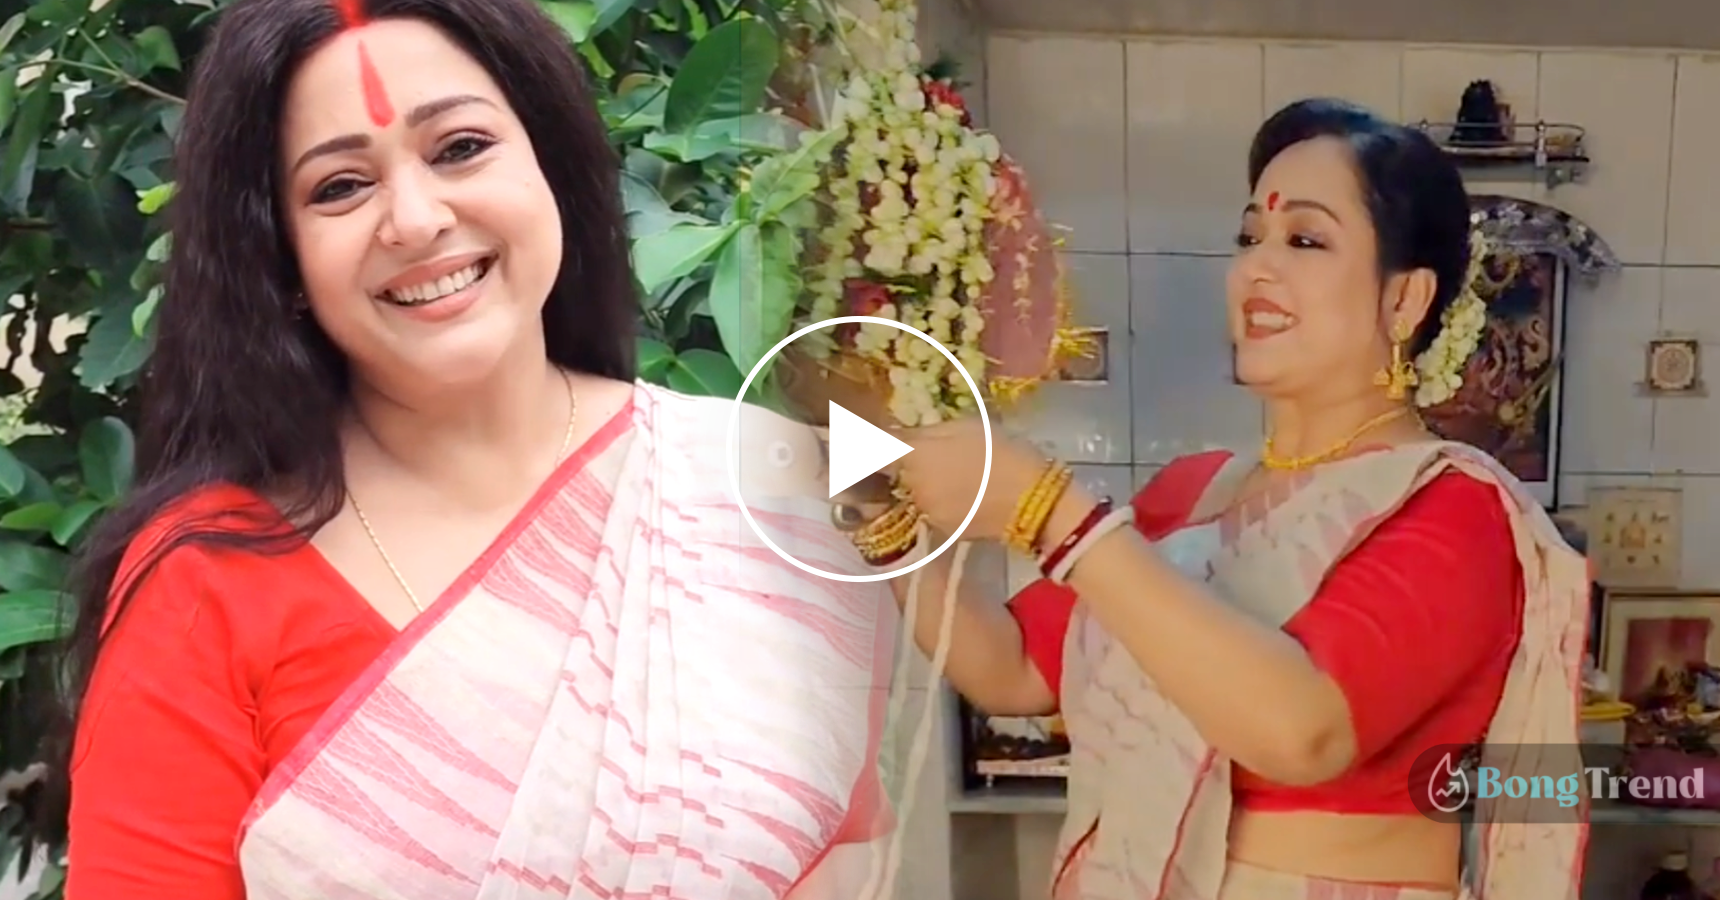 অপরাজিতা আঢ্য,Aprajita Adya,রথযাত্রা উদযাপন,Rathyatra Celebration,ভাইরাল ভিডিও,Viral Video